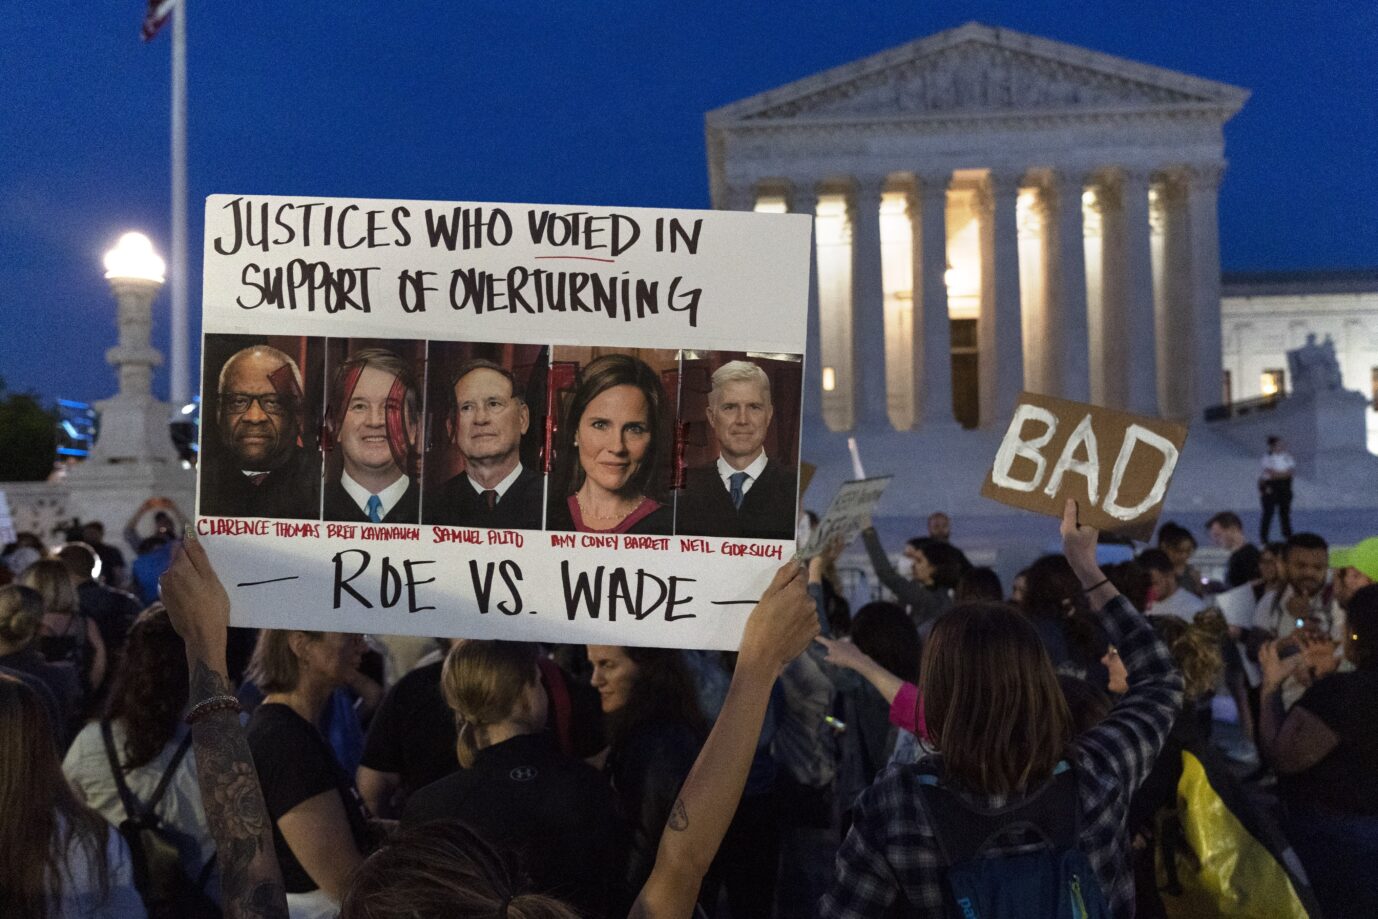 Abtreibungsgegner protestieren vor dem Supreme Court: Auf dem Schild werden die Richter angeprangert, die das bestehende Abtreibungsrecht wohl kippen wollen